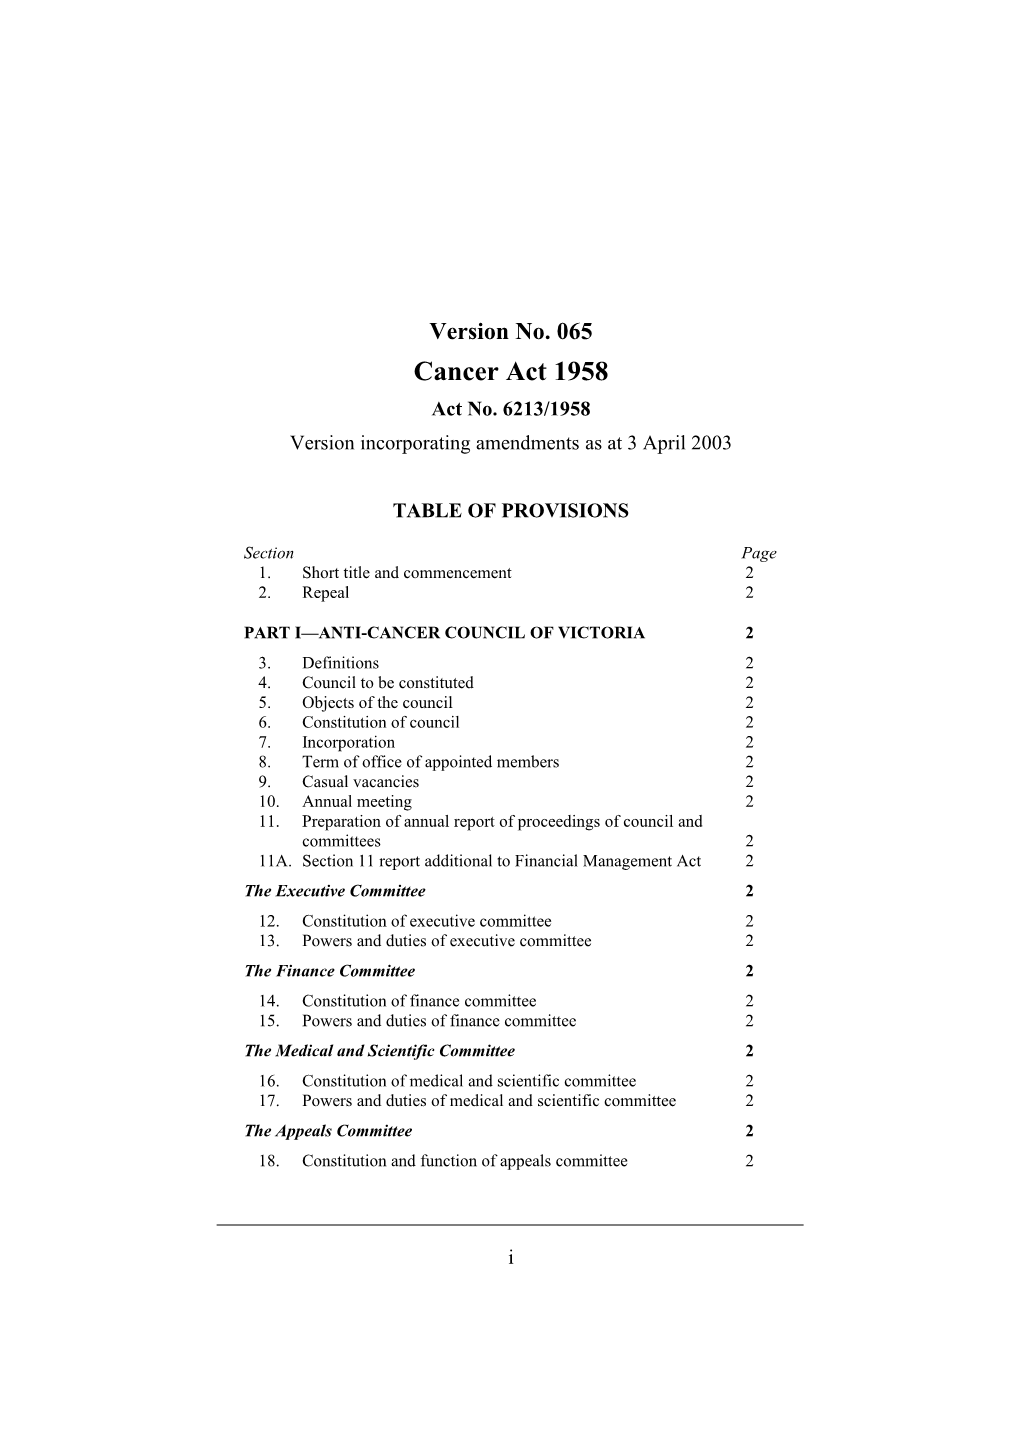 Version Incorporating Amendments As at 3 April 2003